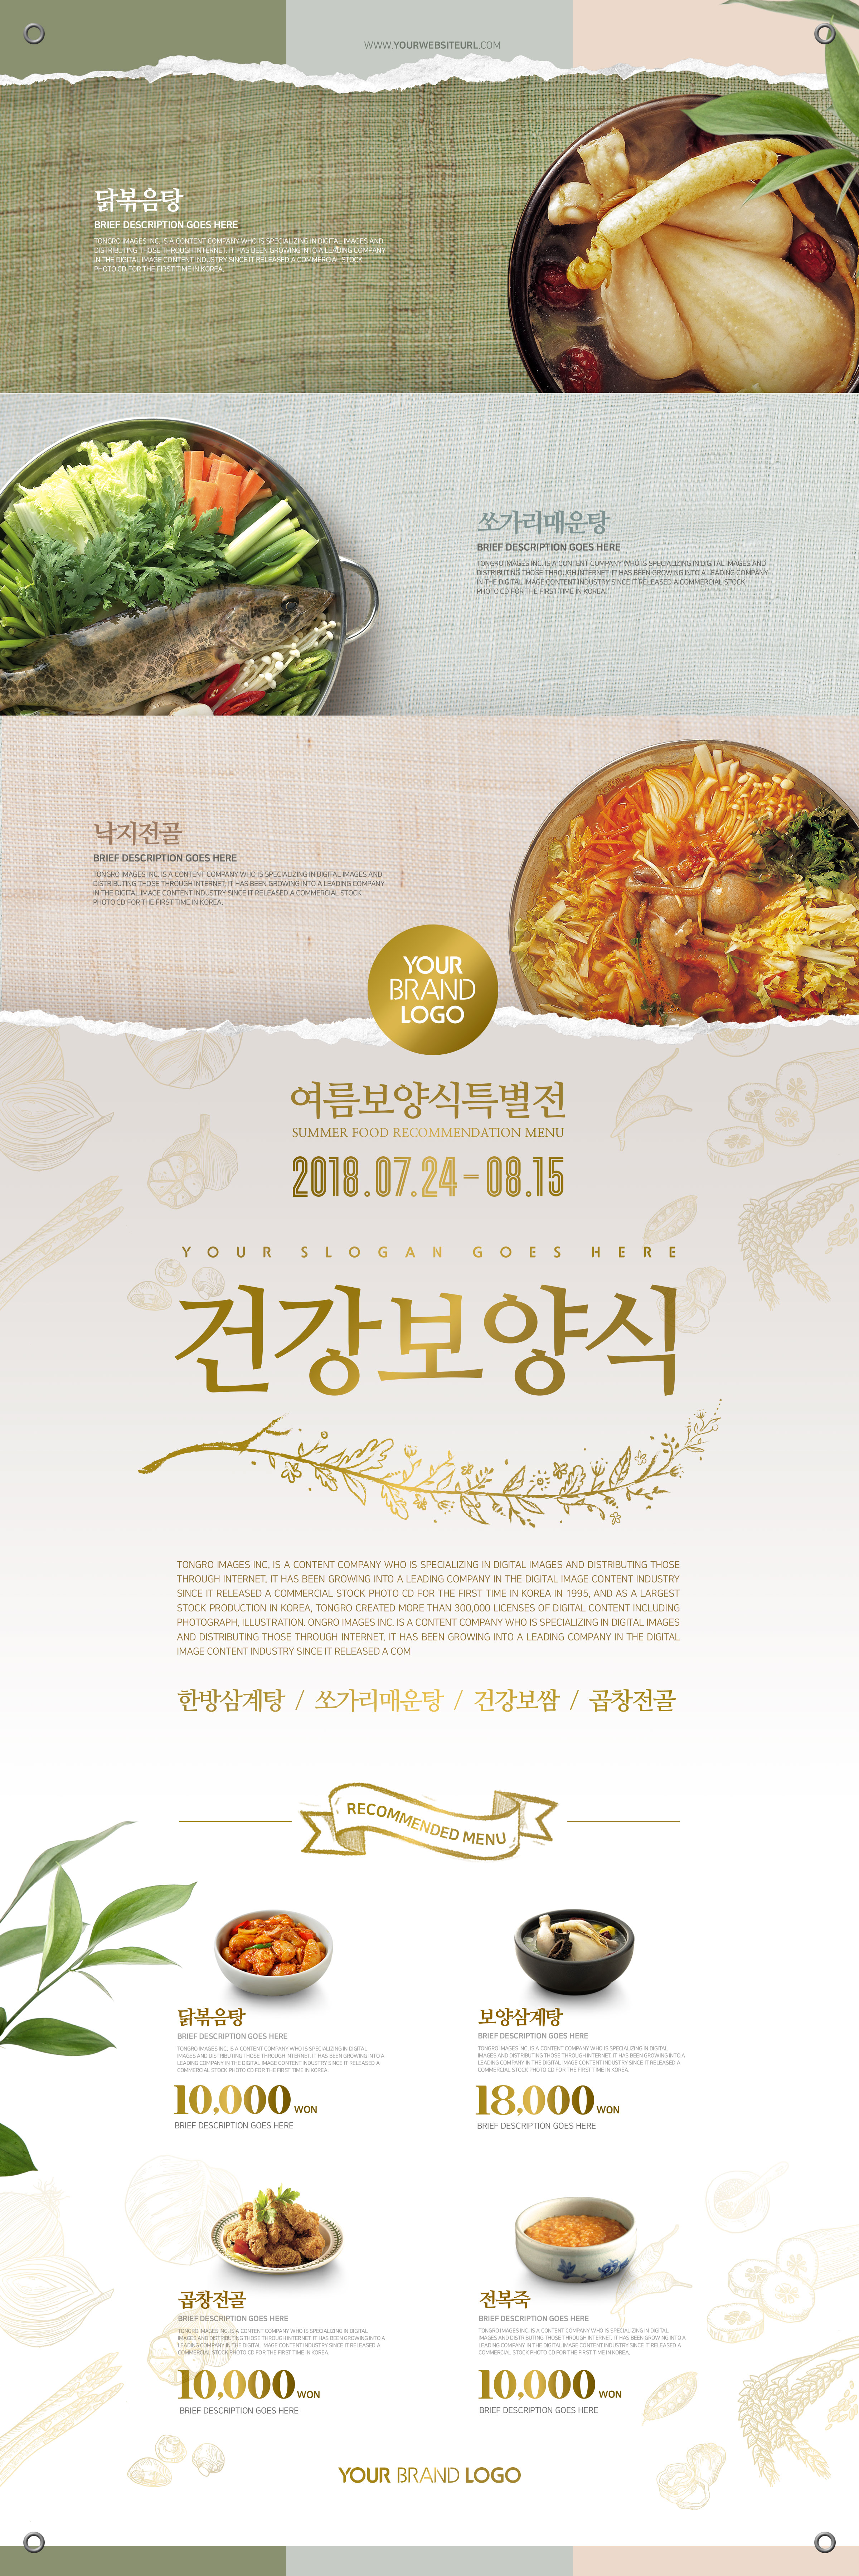 韩国美食料理餐厅活动海报设计模板插图